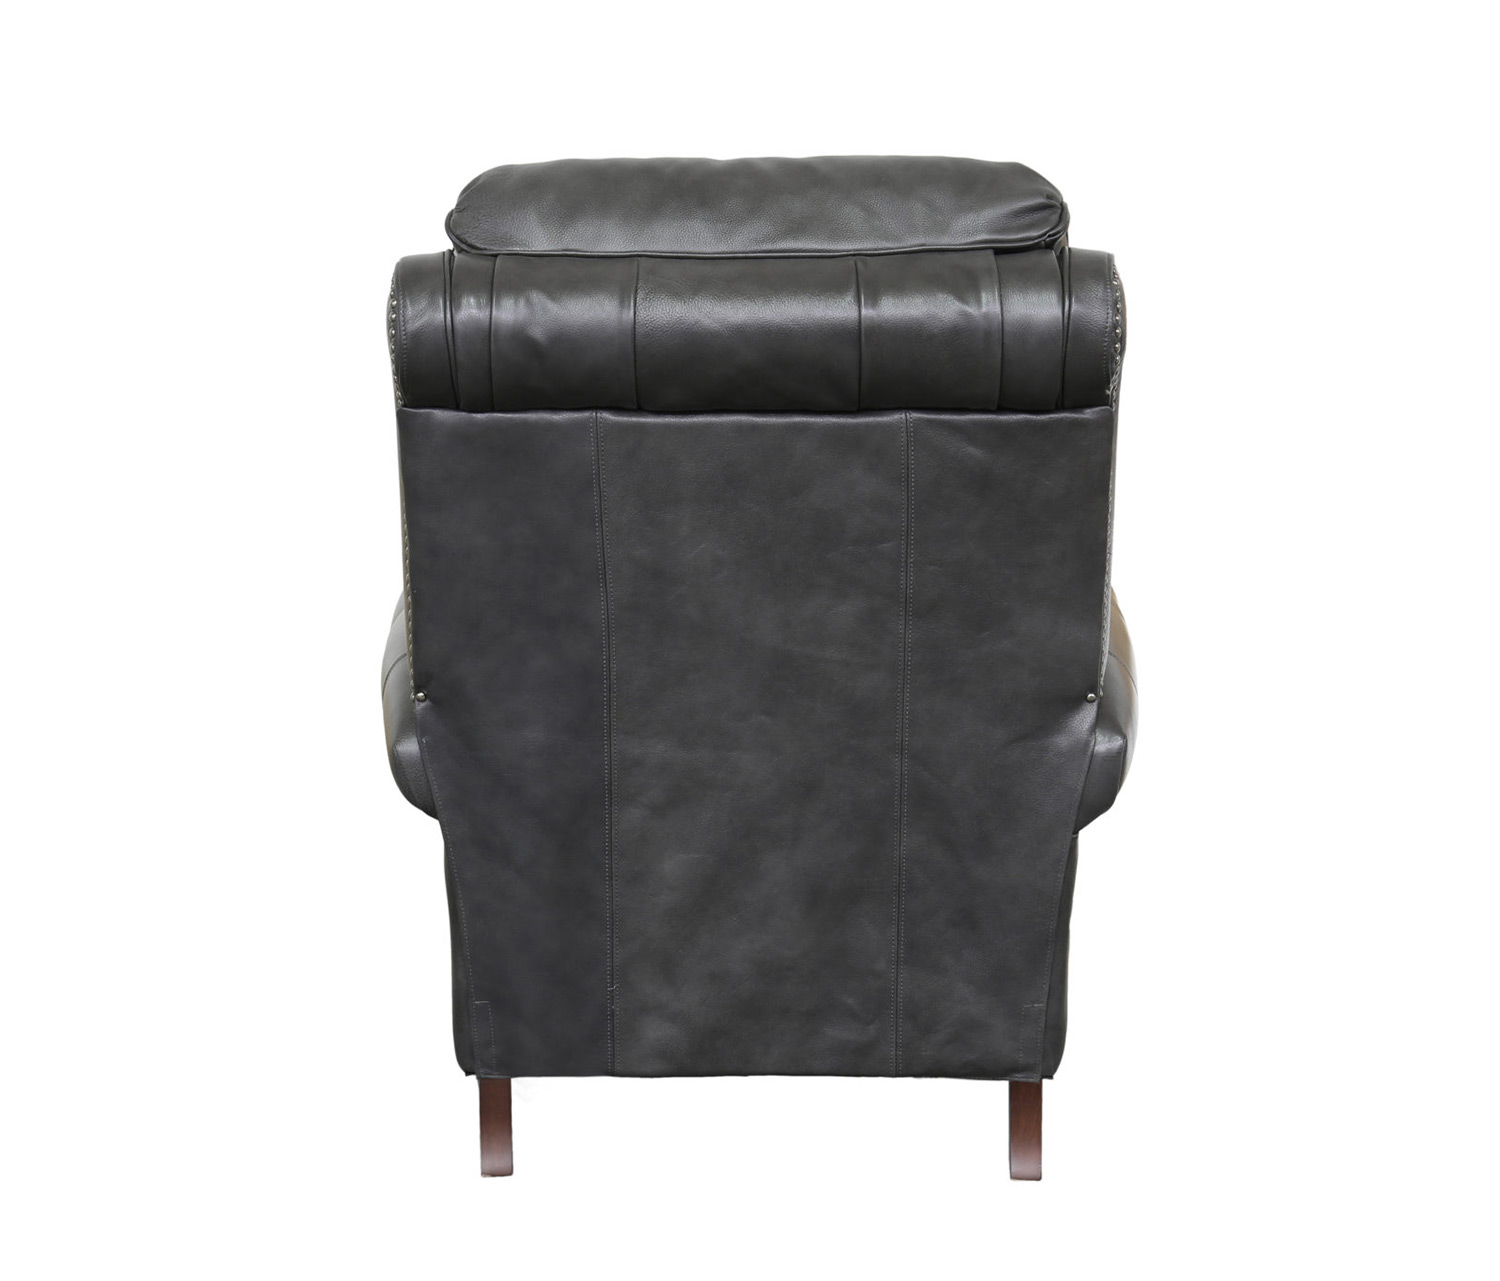 Barcalounger Churchill Recliner Chair - Wrenn Gray/all leather